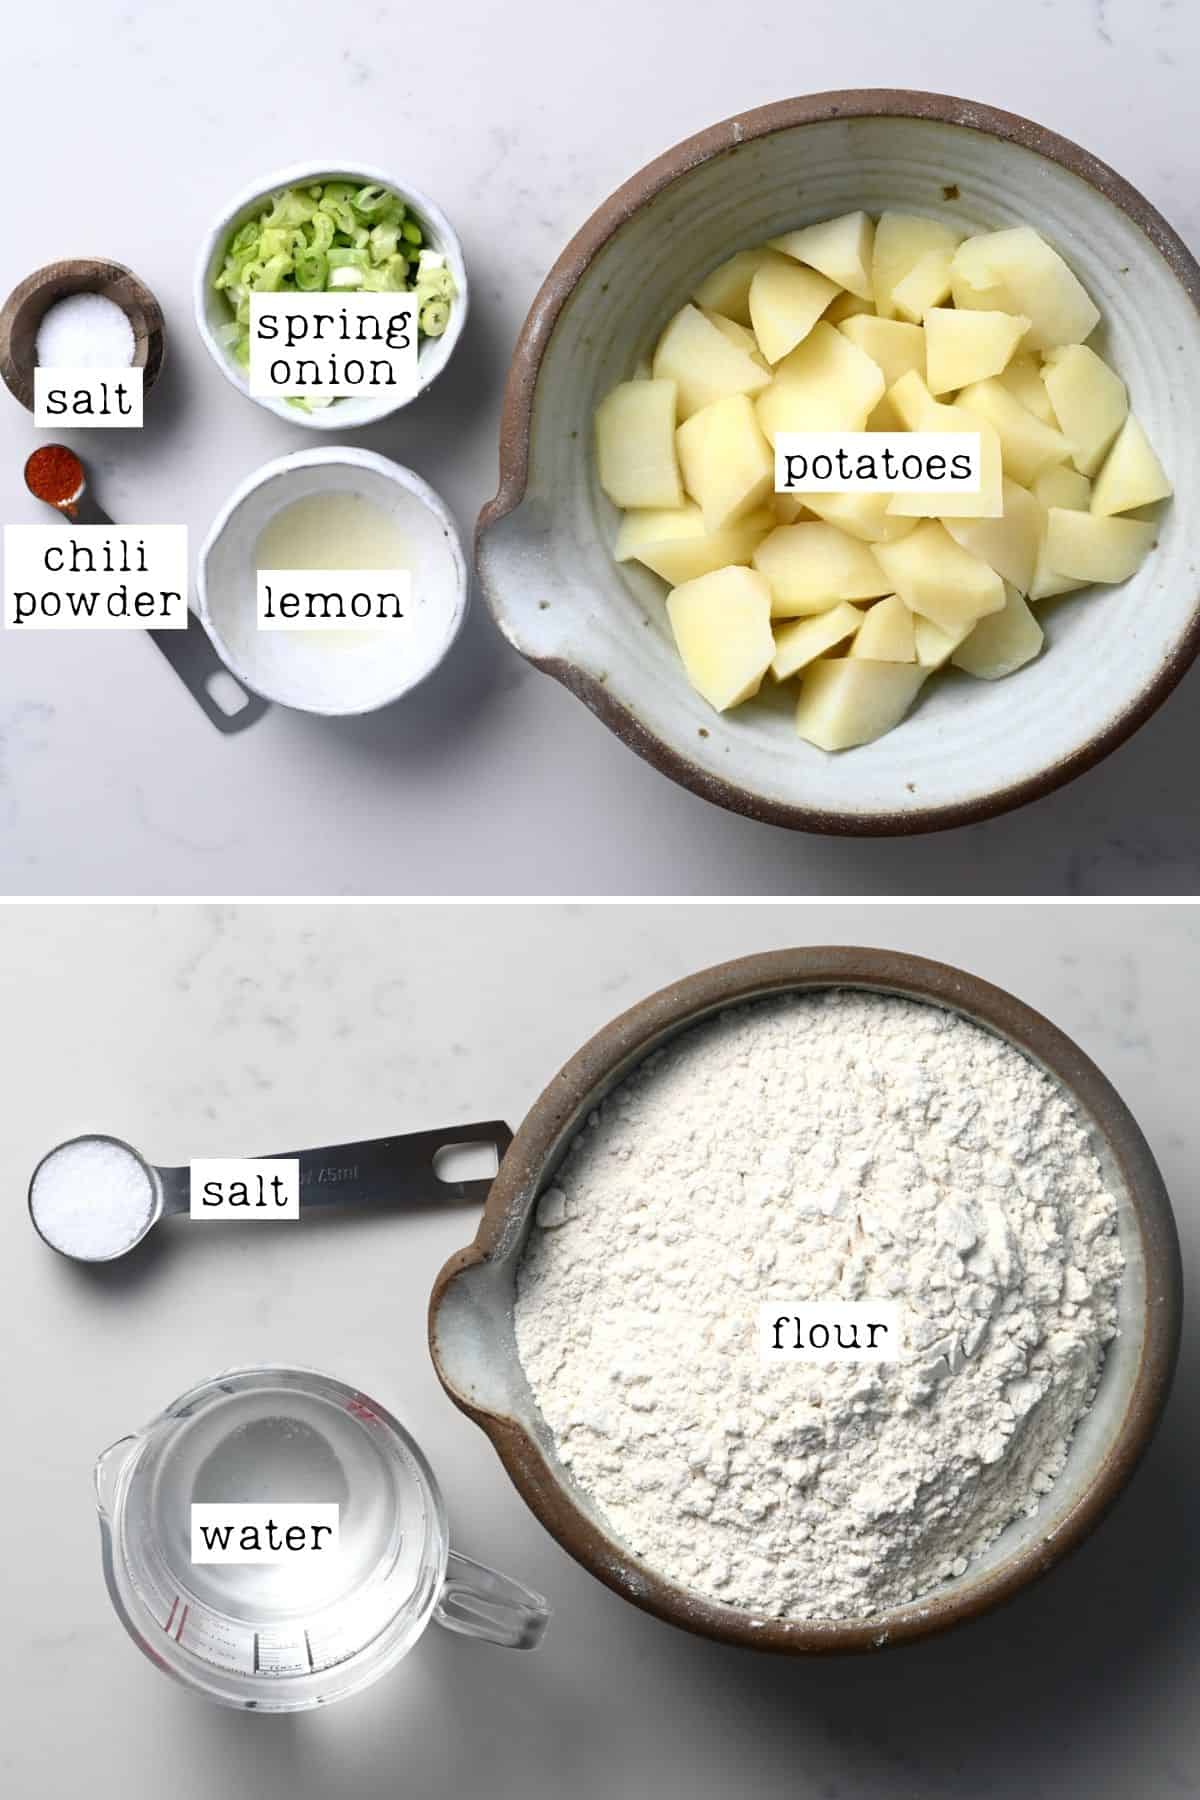 Ingredients for potato roti